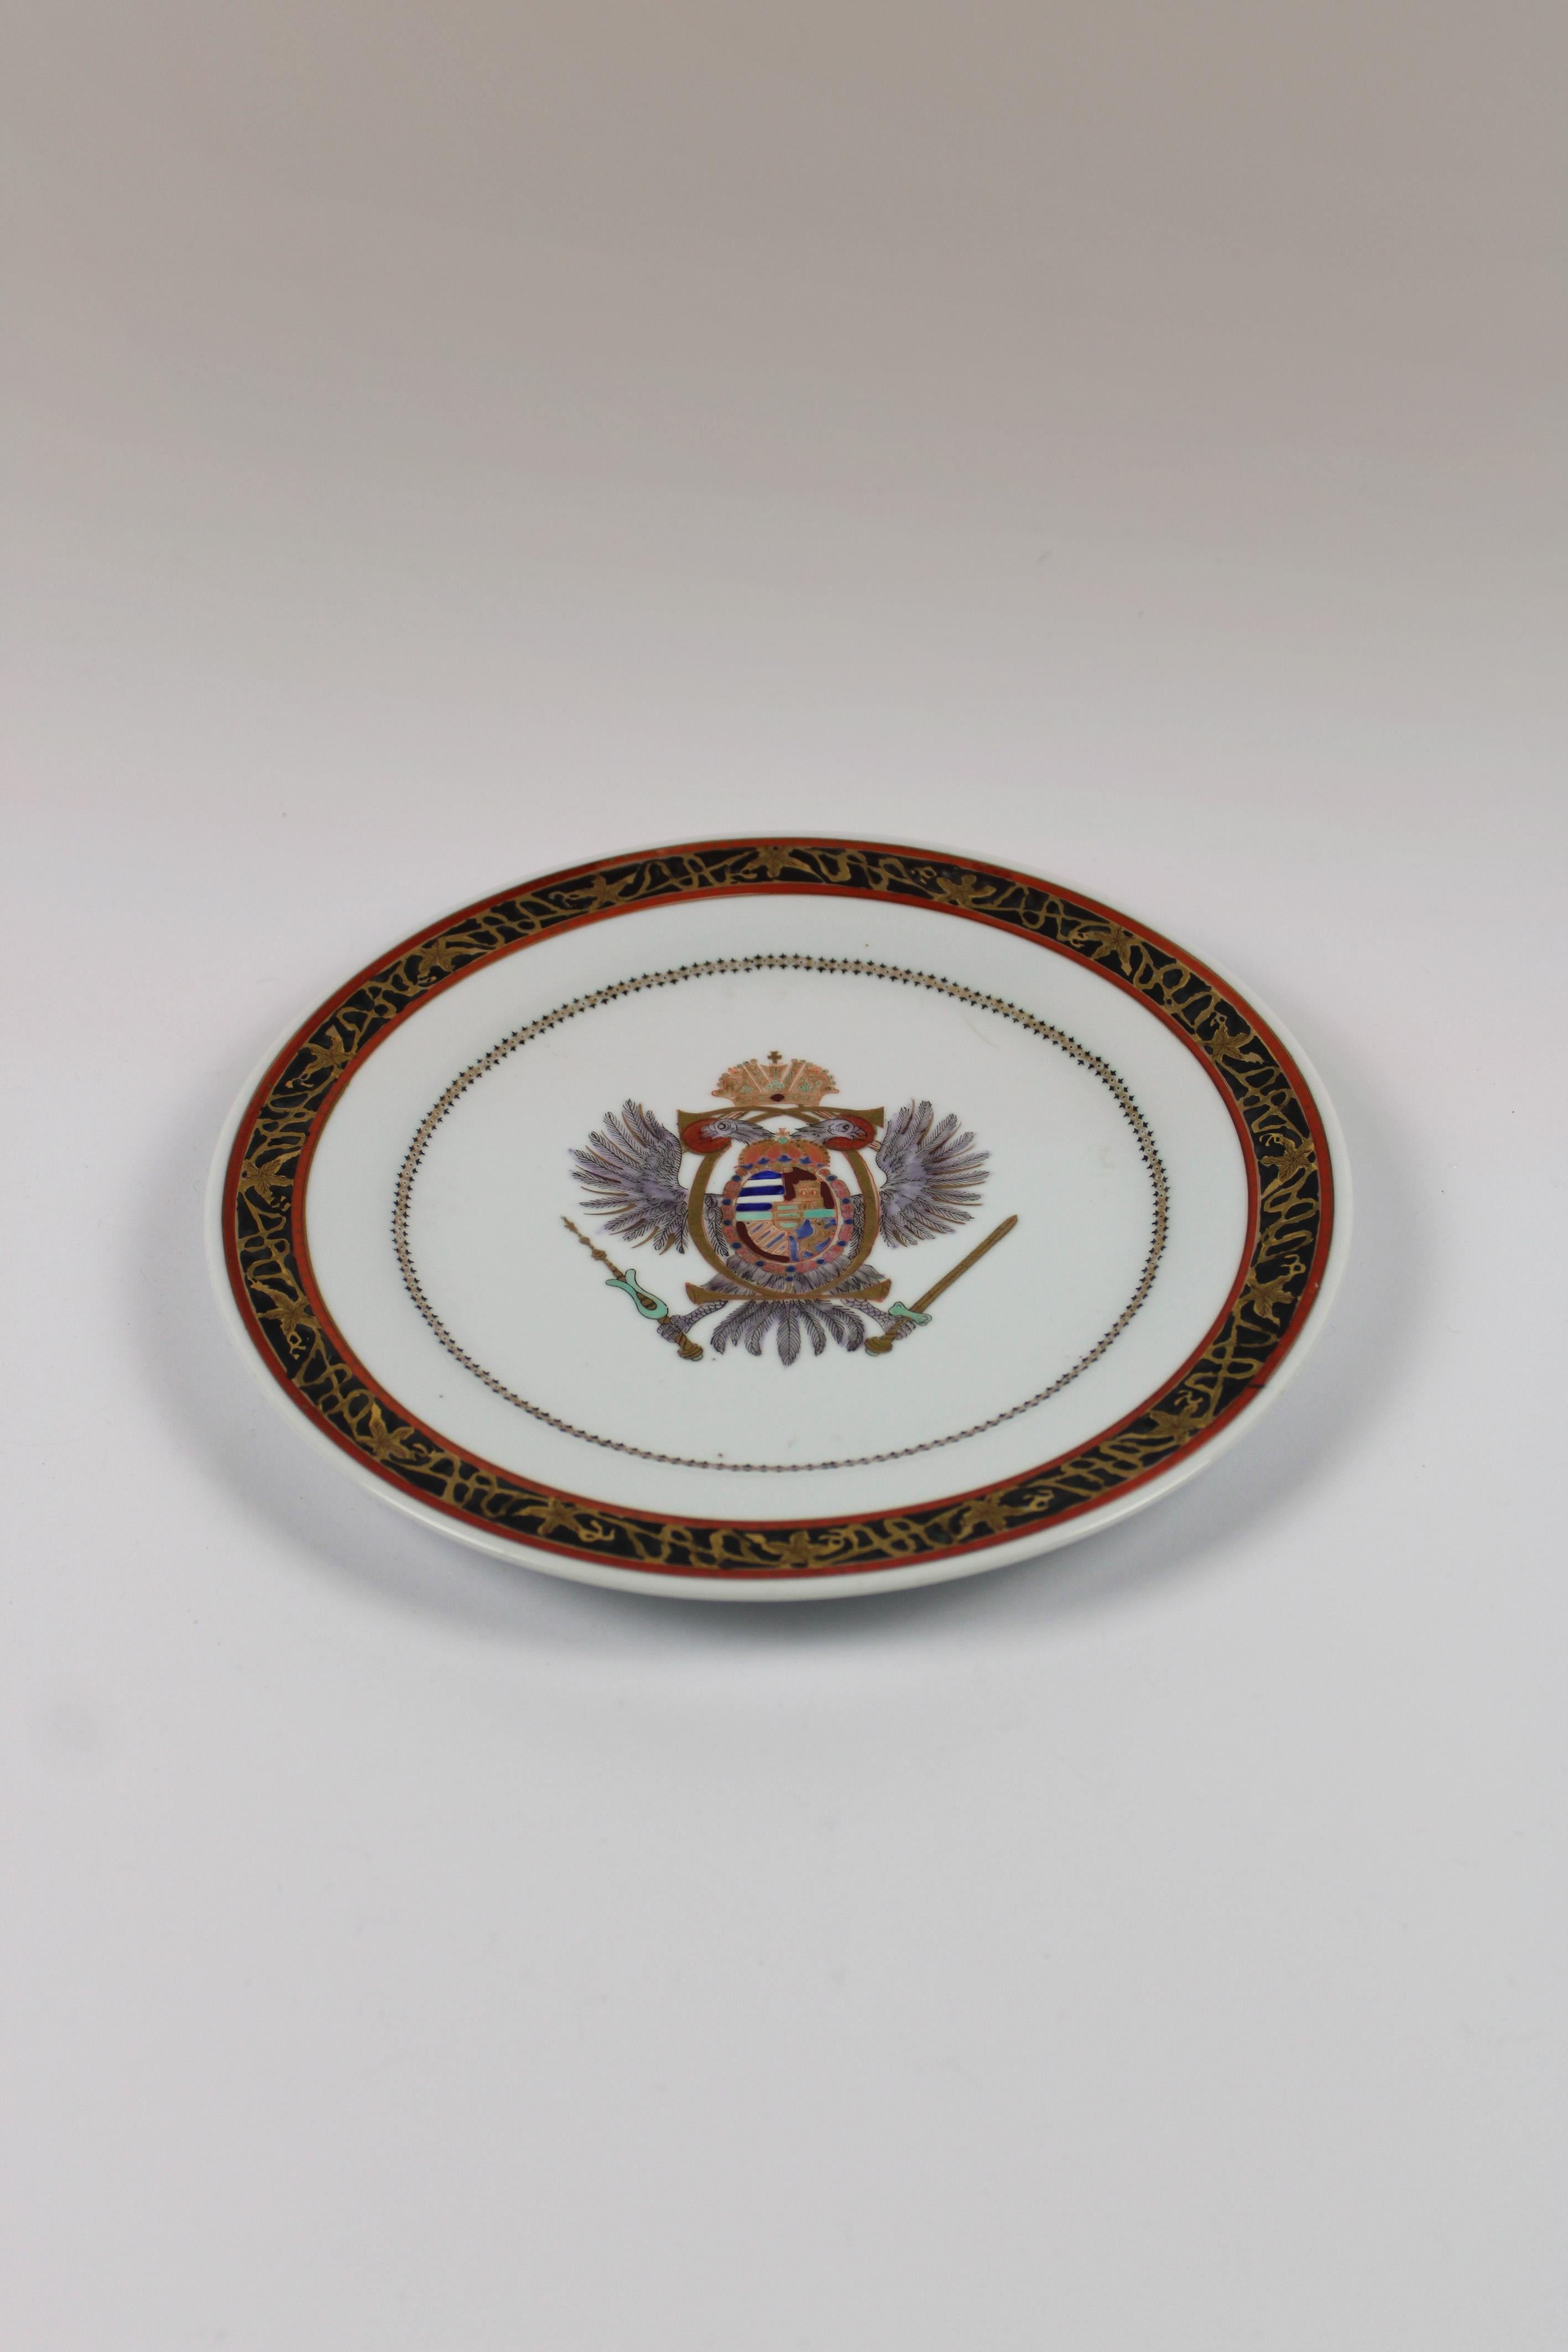 Cette magnifique assiette de Porcelaine de Paris, ornée du motif de l'aigle impérial autrichien, datant de l'époque de Napoléon III au XIXe siècle, est un véritable symbole de l'histoire. Réalisée avec minutie, cette assiette exquise incarne